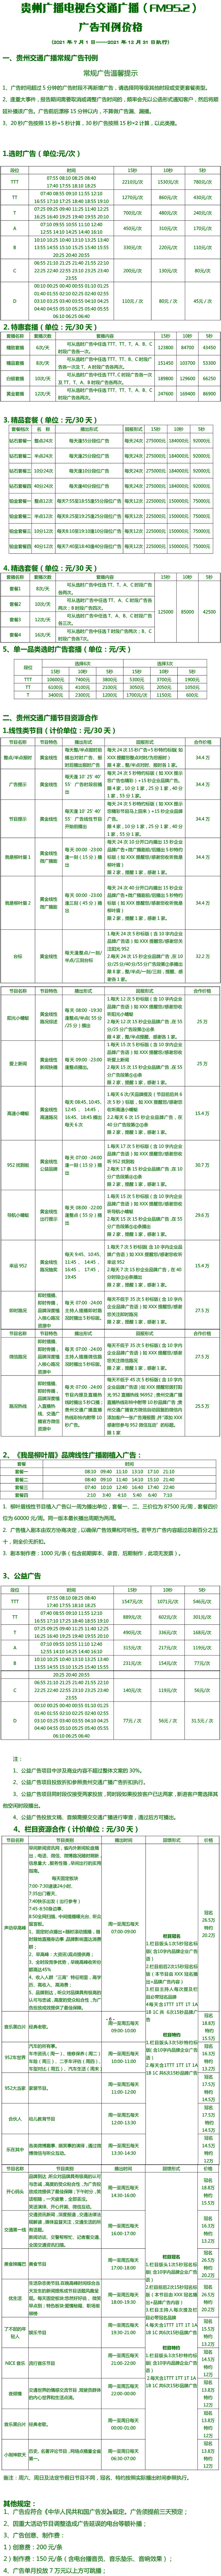 2021贵州人民广播电台交通广播 FM95.2广告报价表.jpg